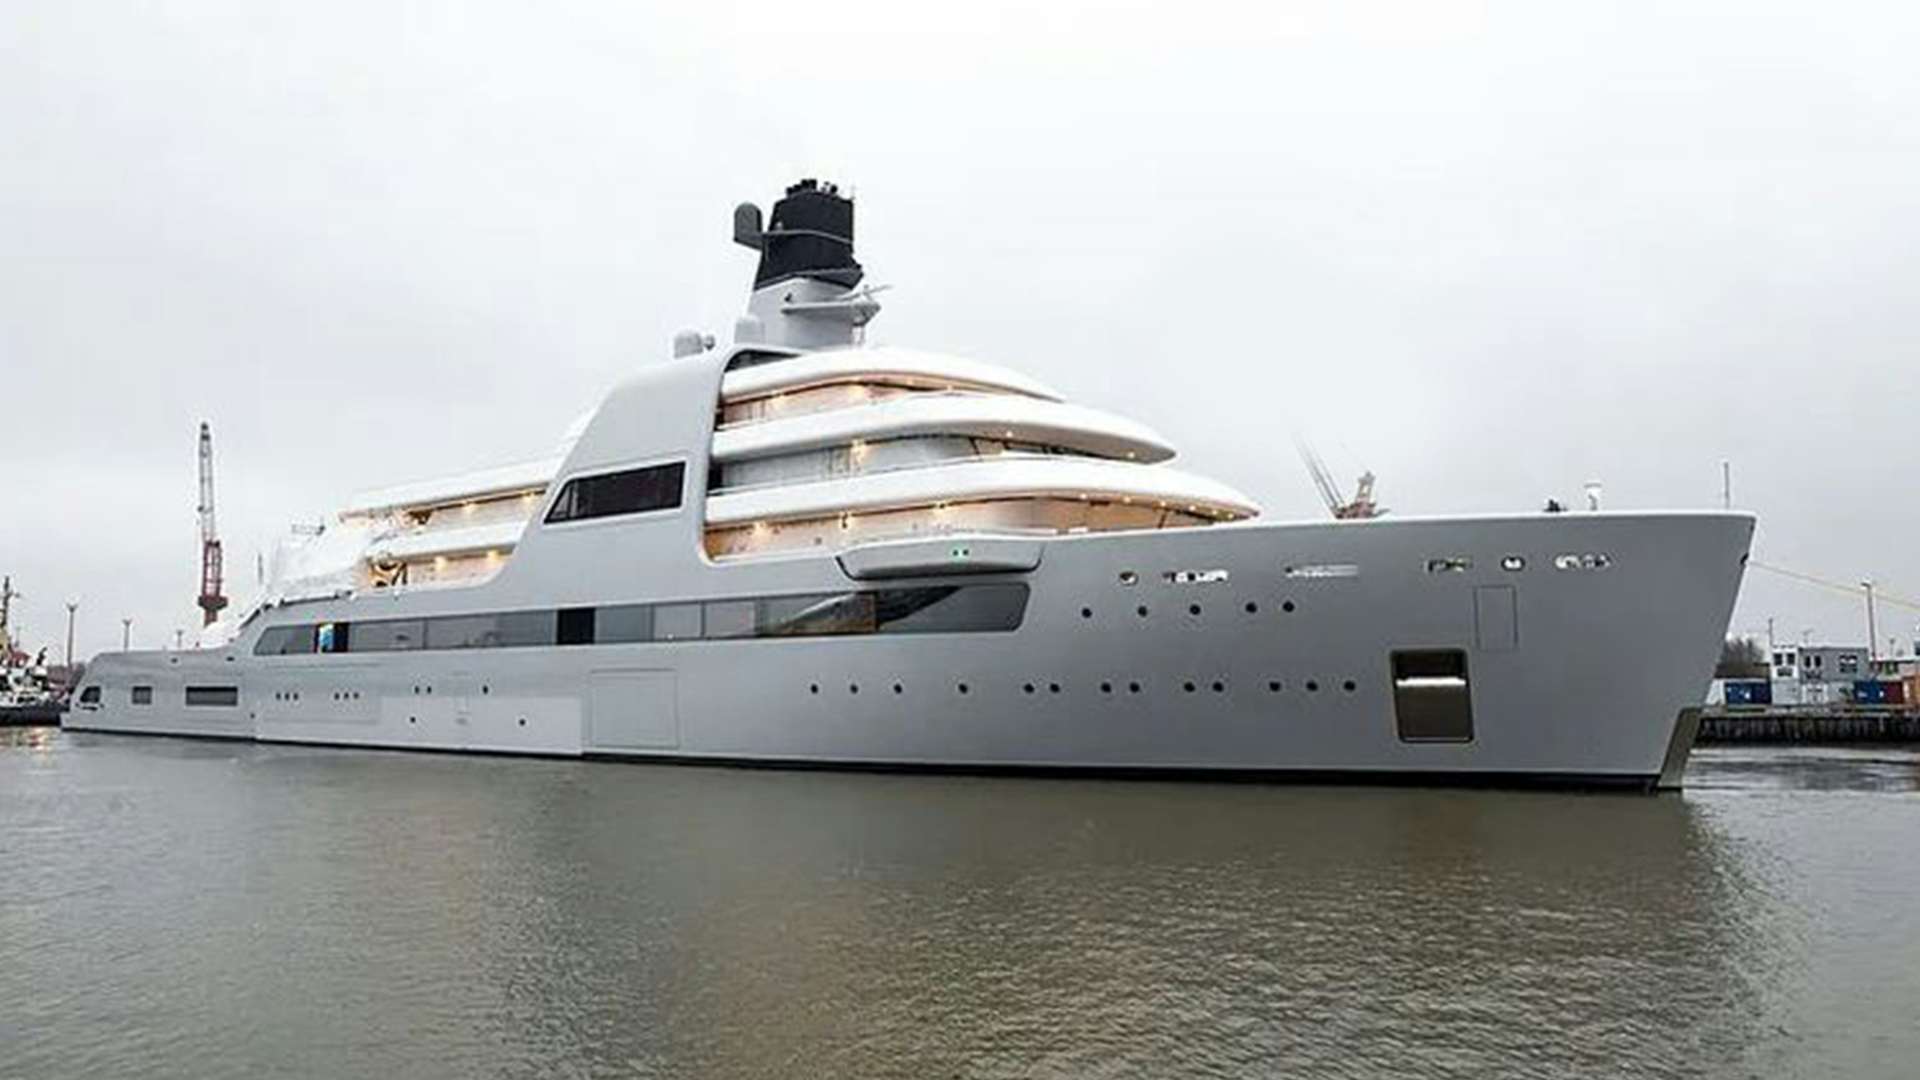 459-foot (140m) Lloyd Werft giga yacht SOLARIS